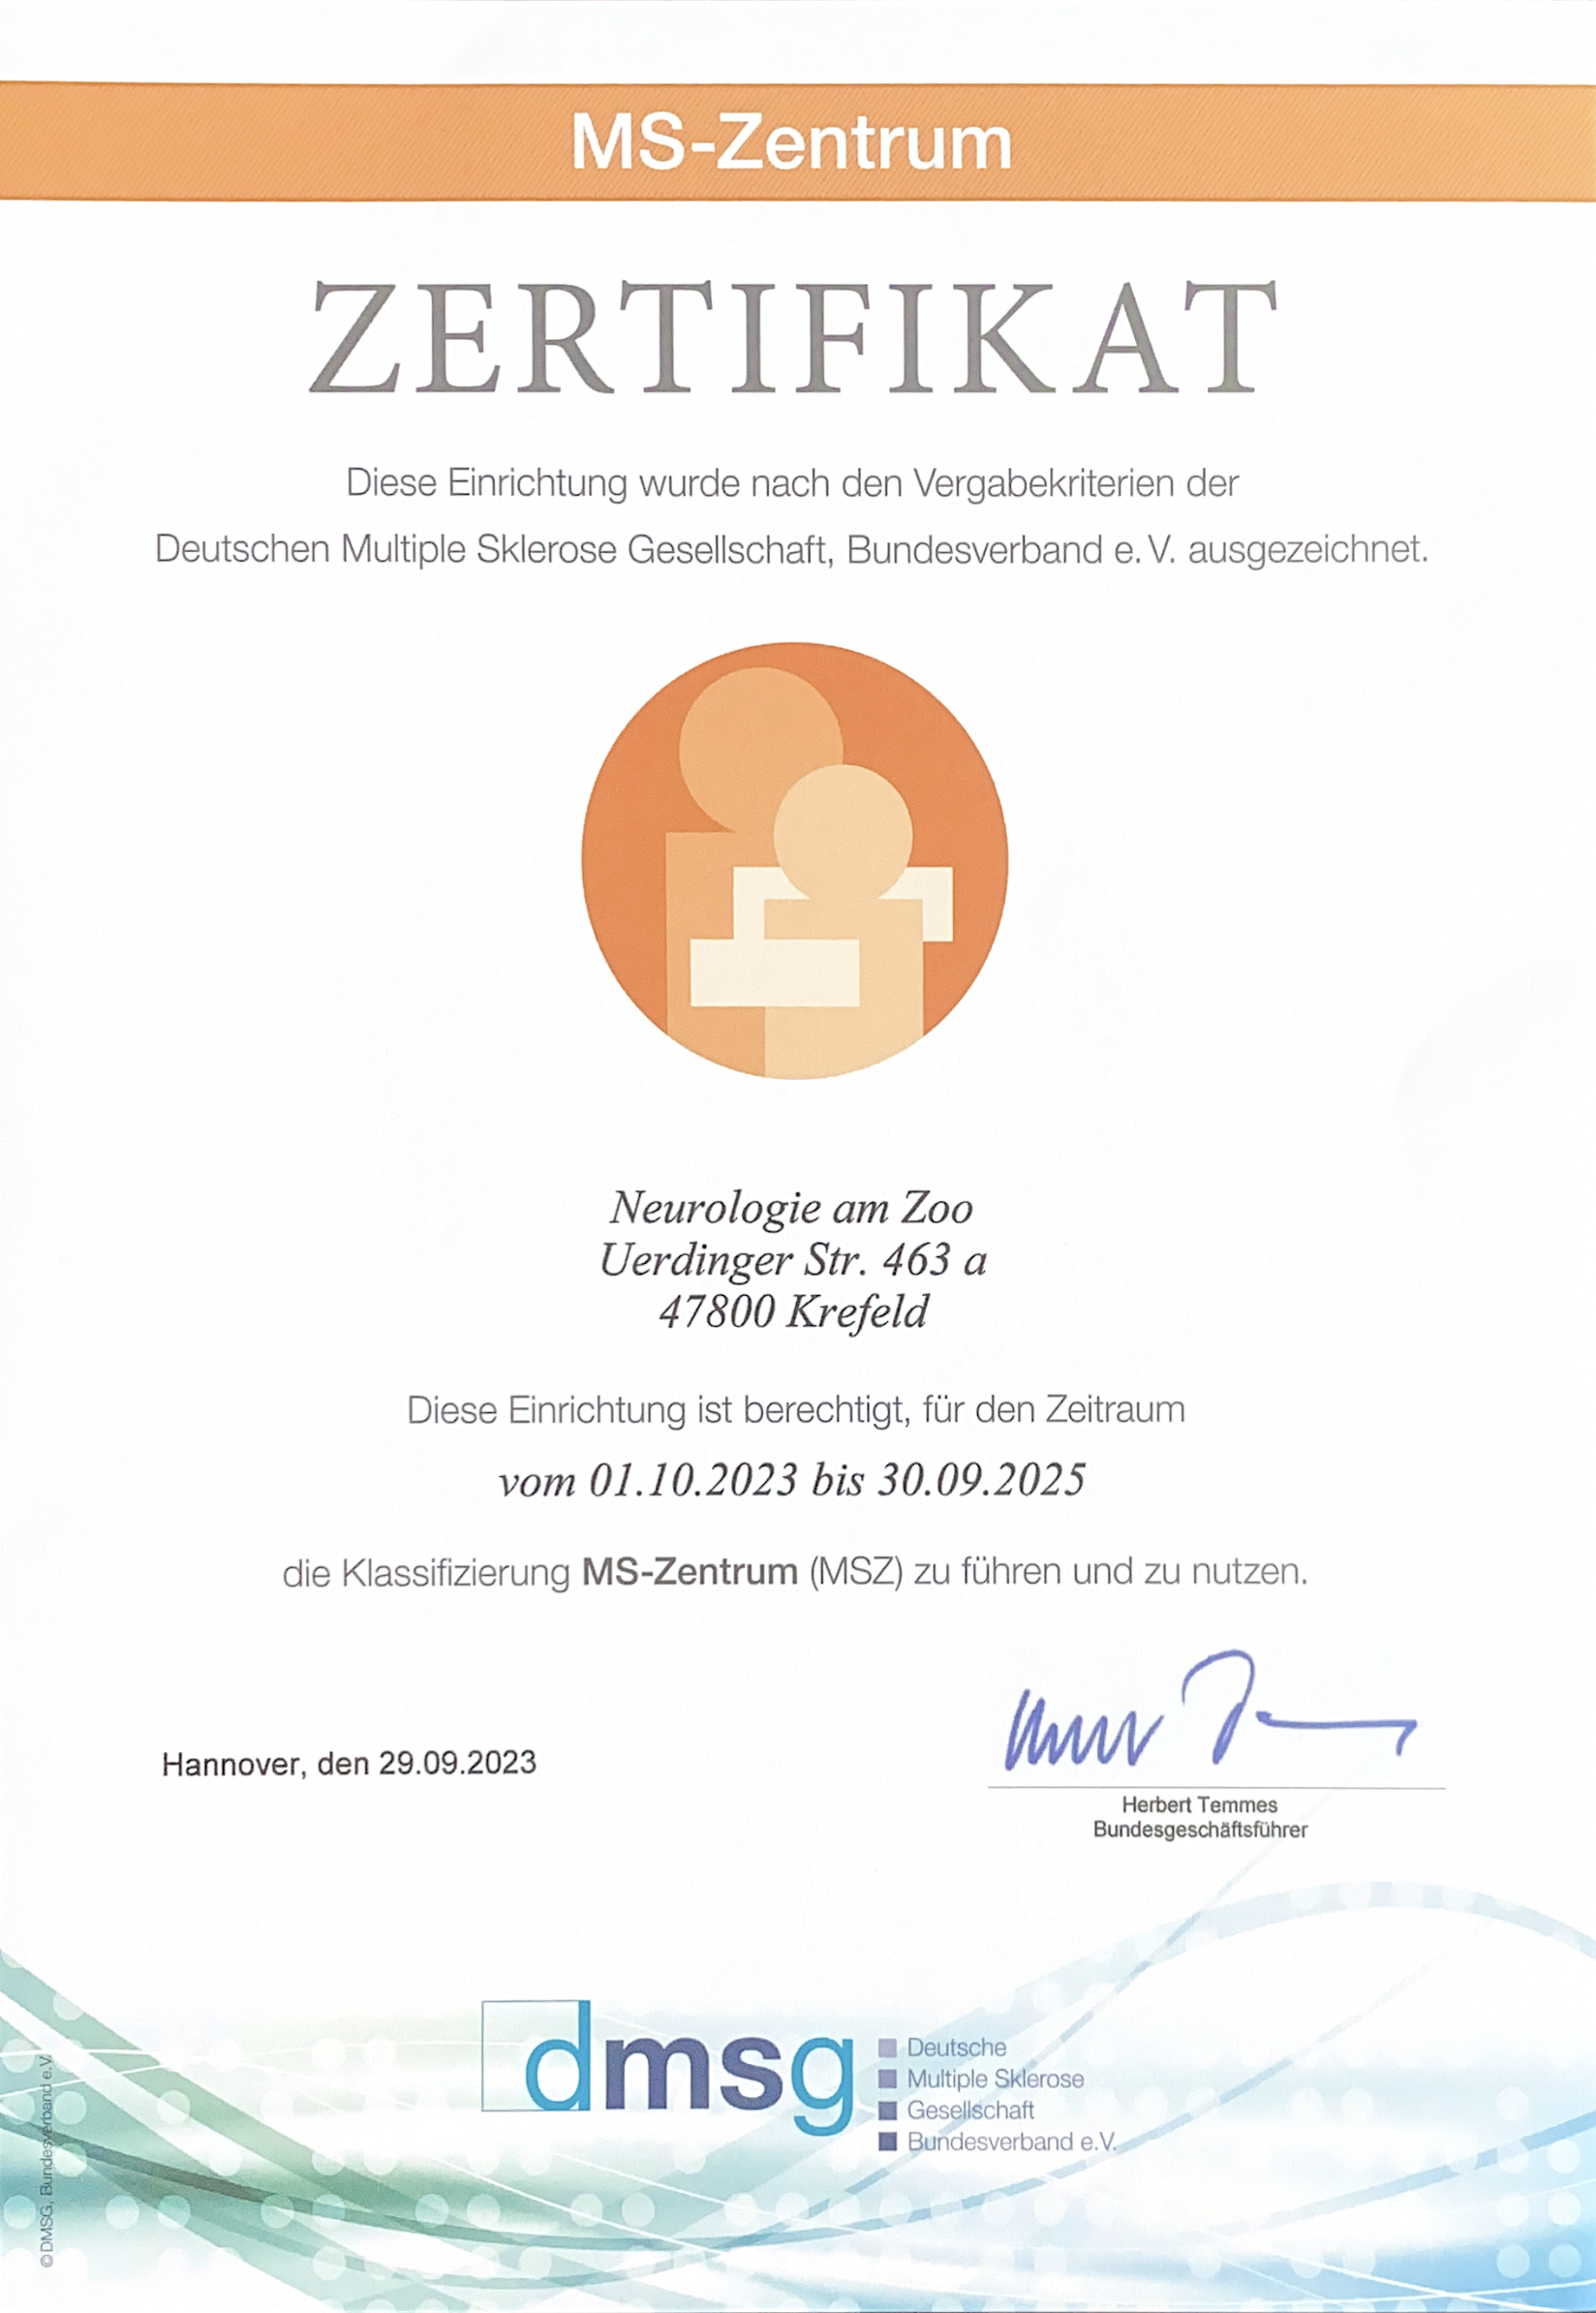 MS-Zentrum Zertifikat